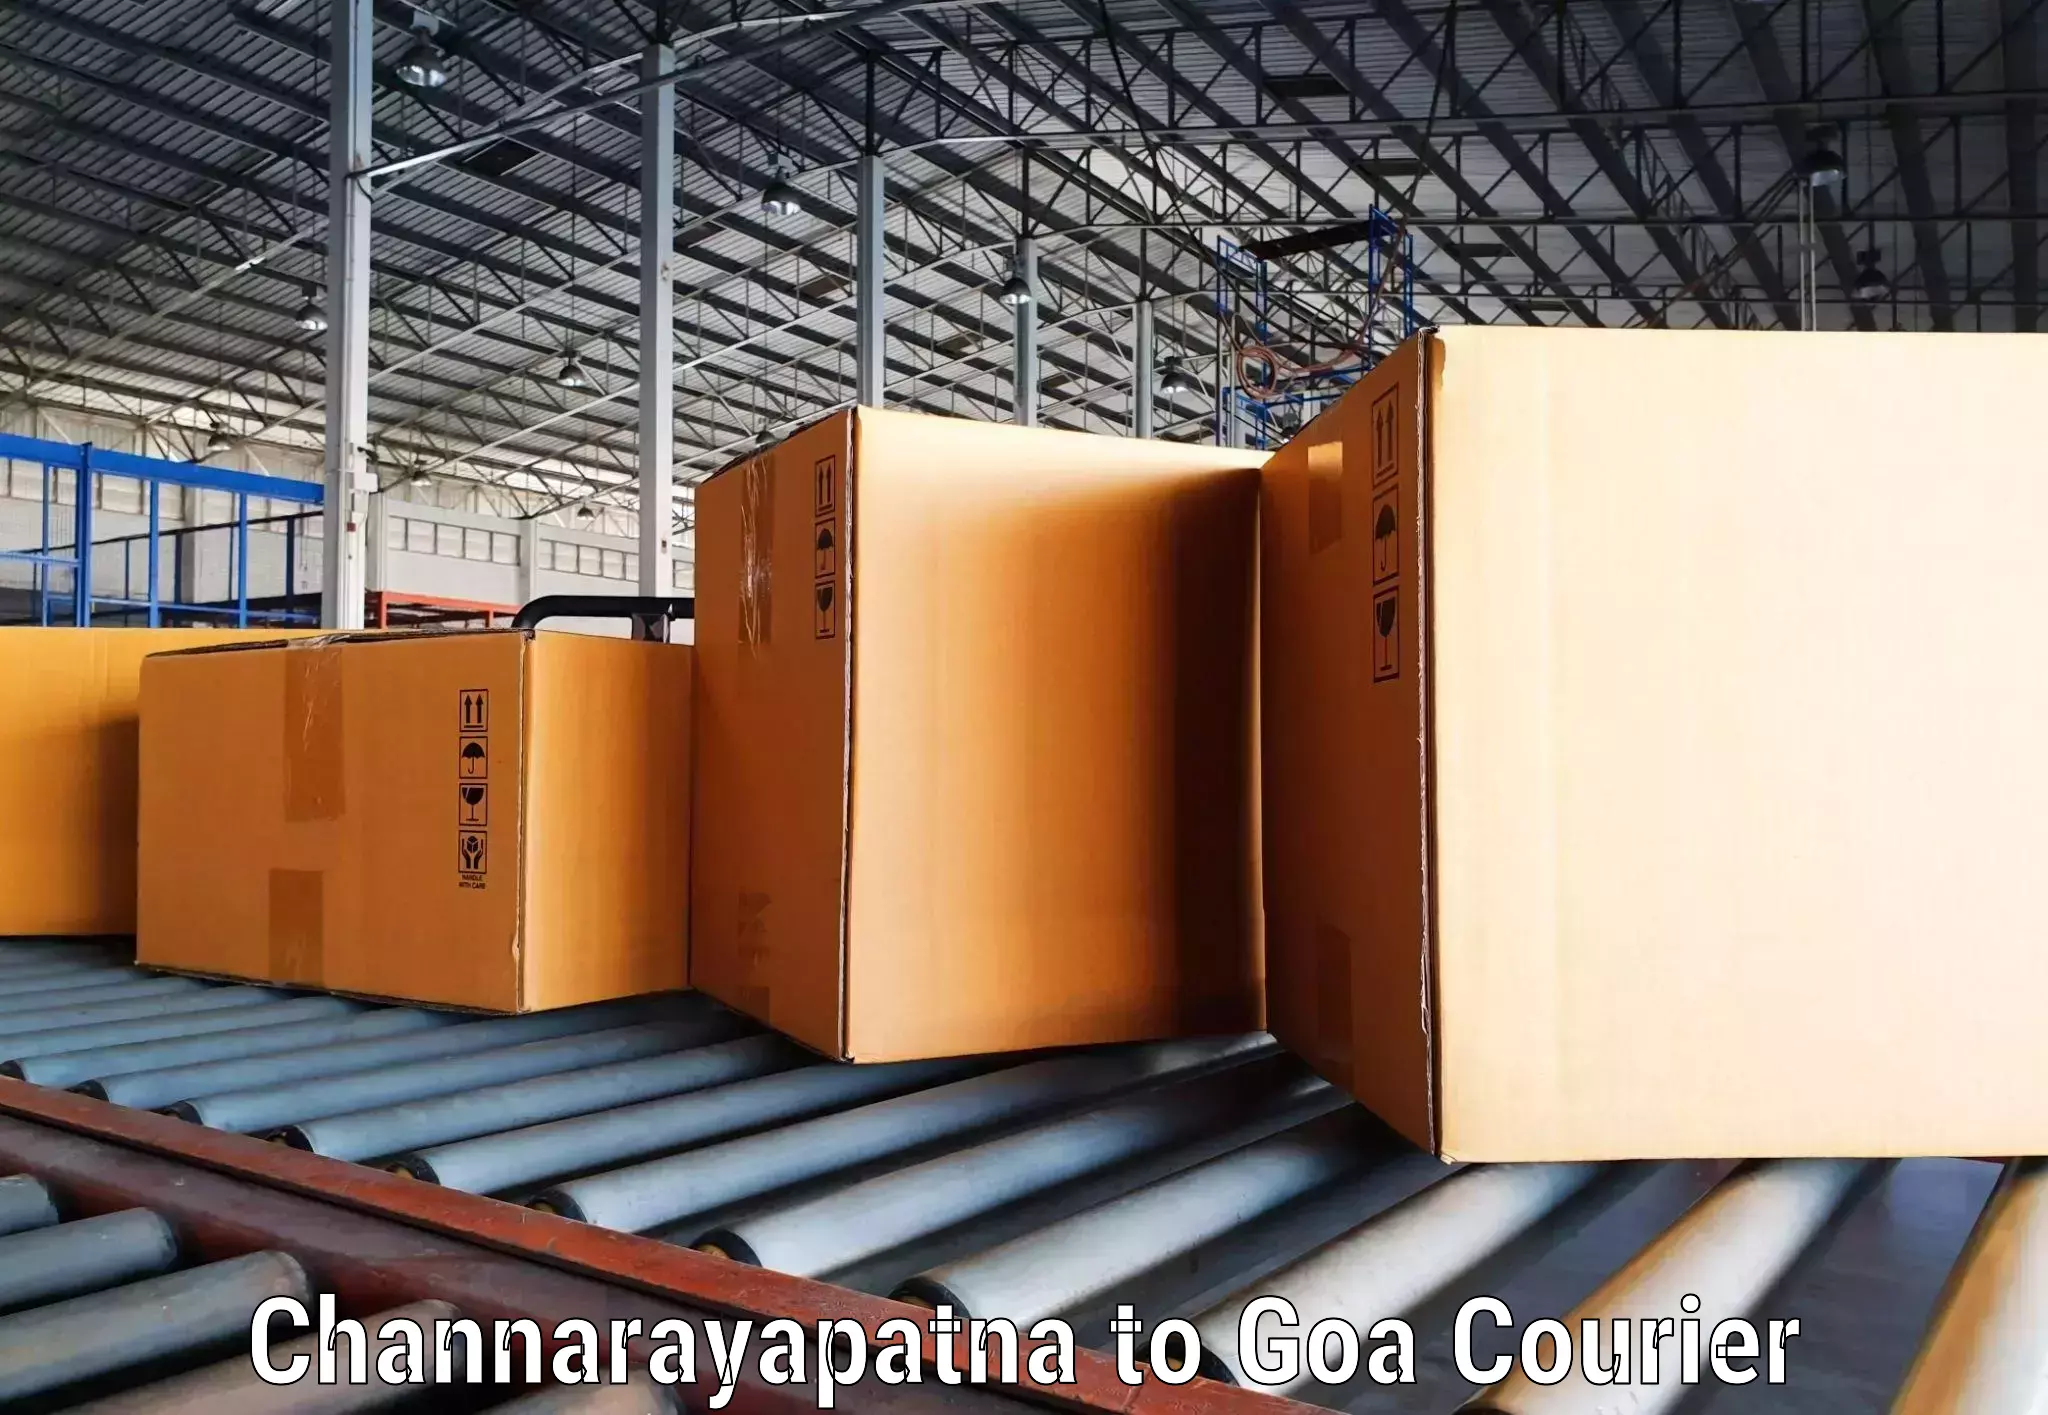 Express delivery capabilities Channarayapatna to Ponda